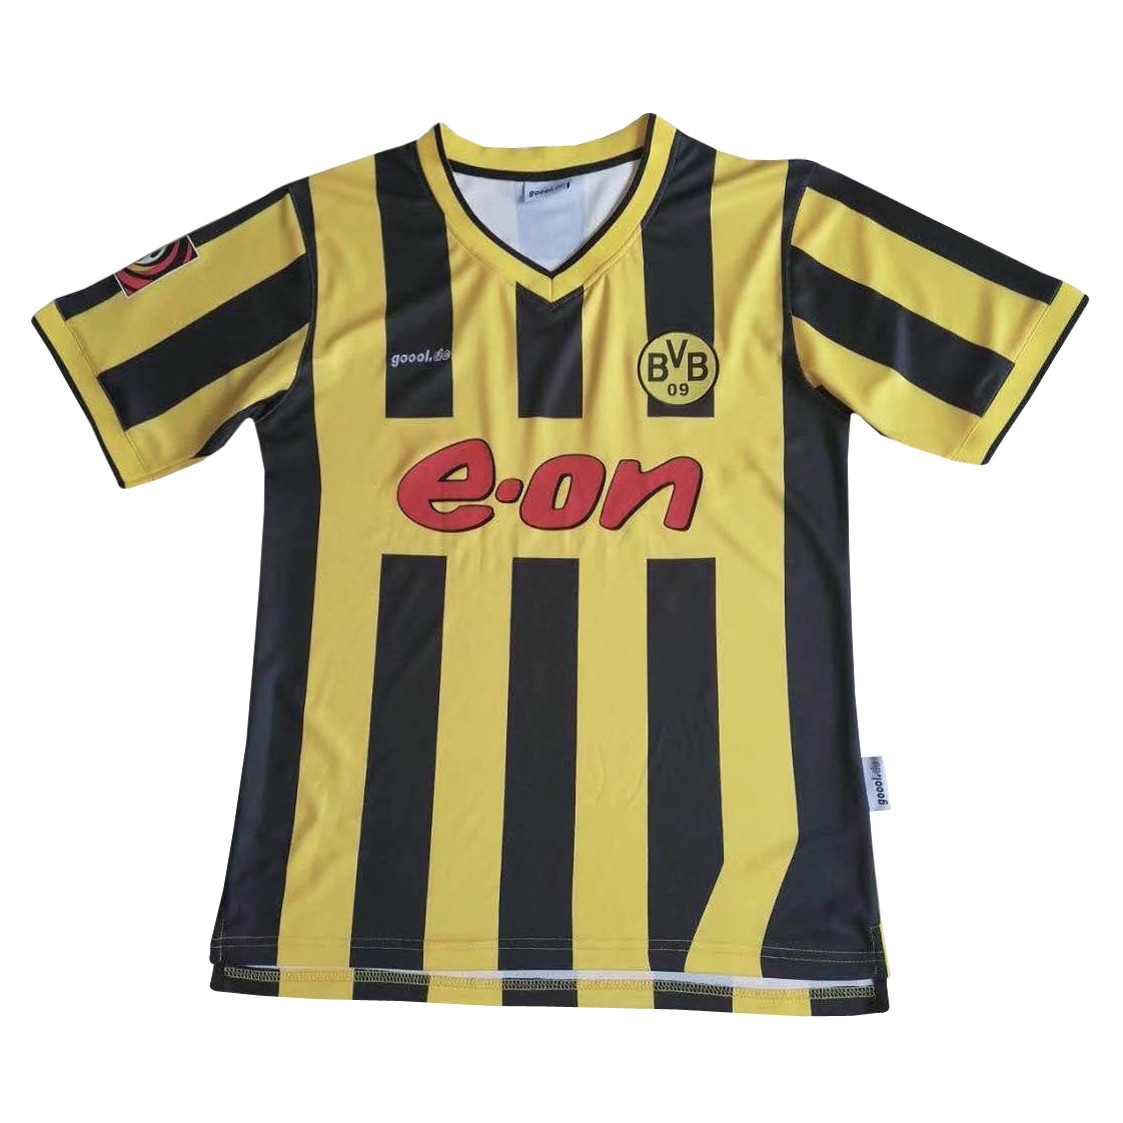 US$ 18.8 - Borussia Dortmund Retro Home Jersey Mens 2000 - www.fcsoccerworld.com